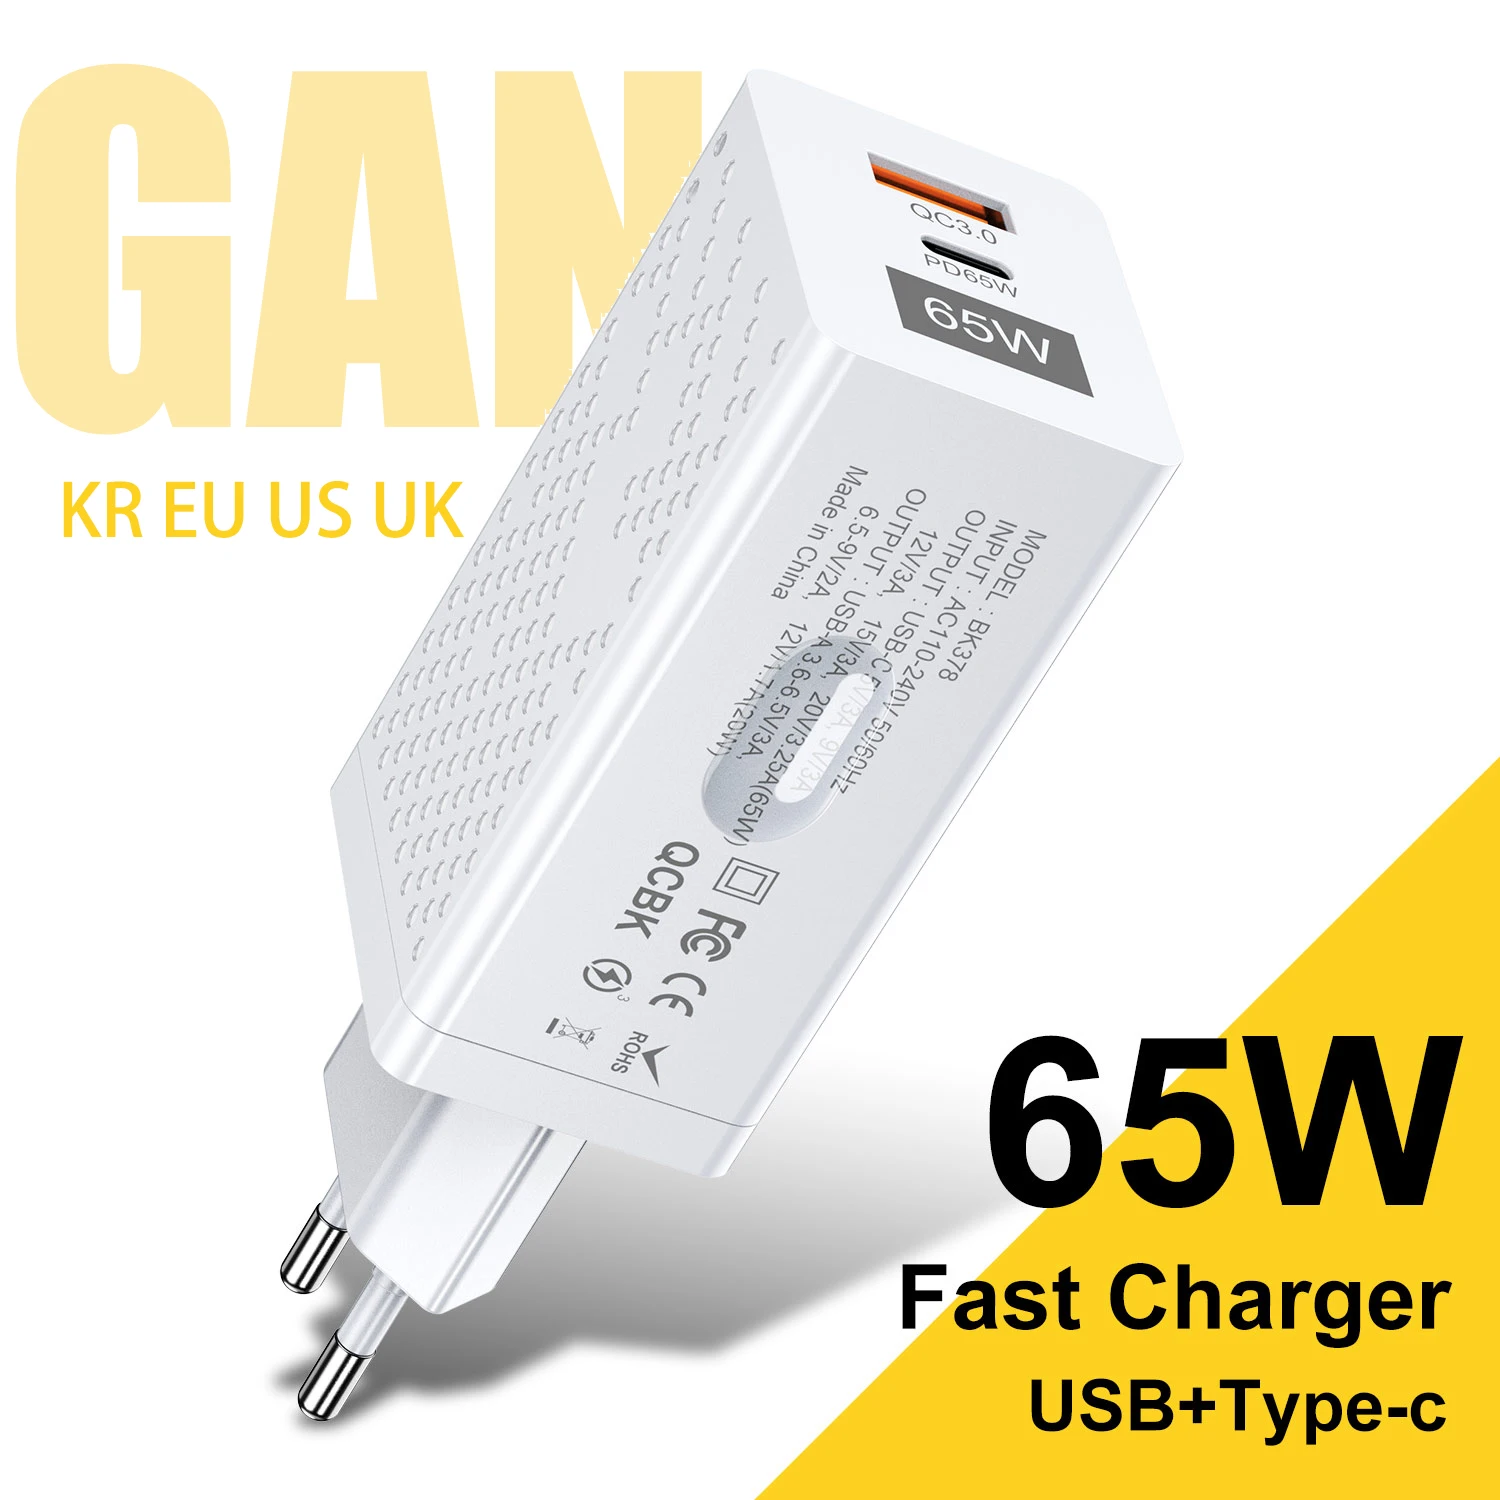 

GTWIN GaN 65 Вт Зарядное устройство корейское быстрое зарядное устройство PD USB C зарядное устройство KR EU US UK портативное зарядное устройство для быстрой зарядки телефона настенное зарядное устройство